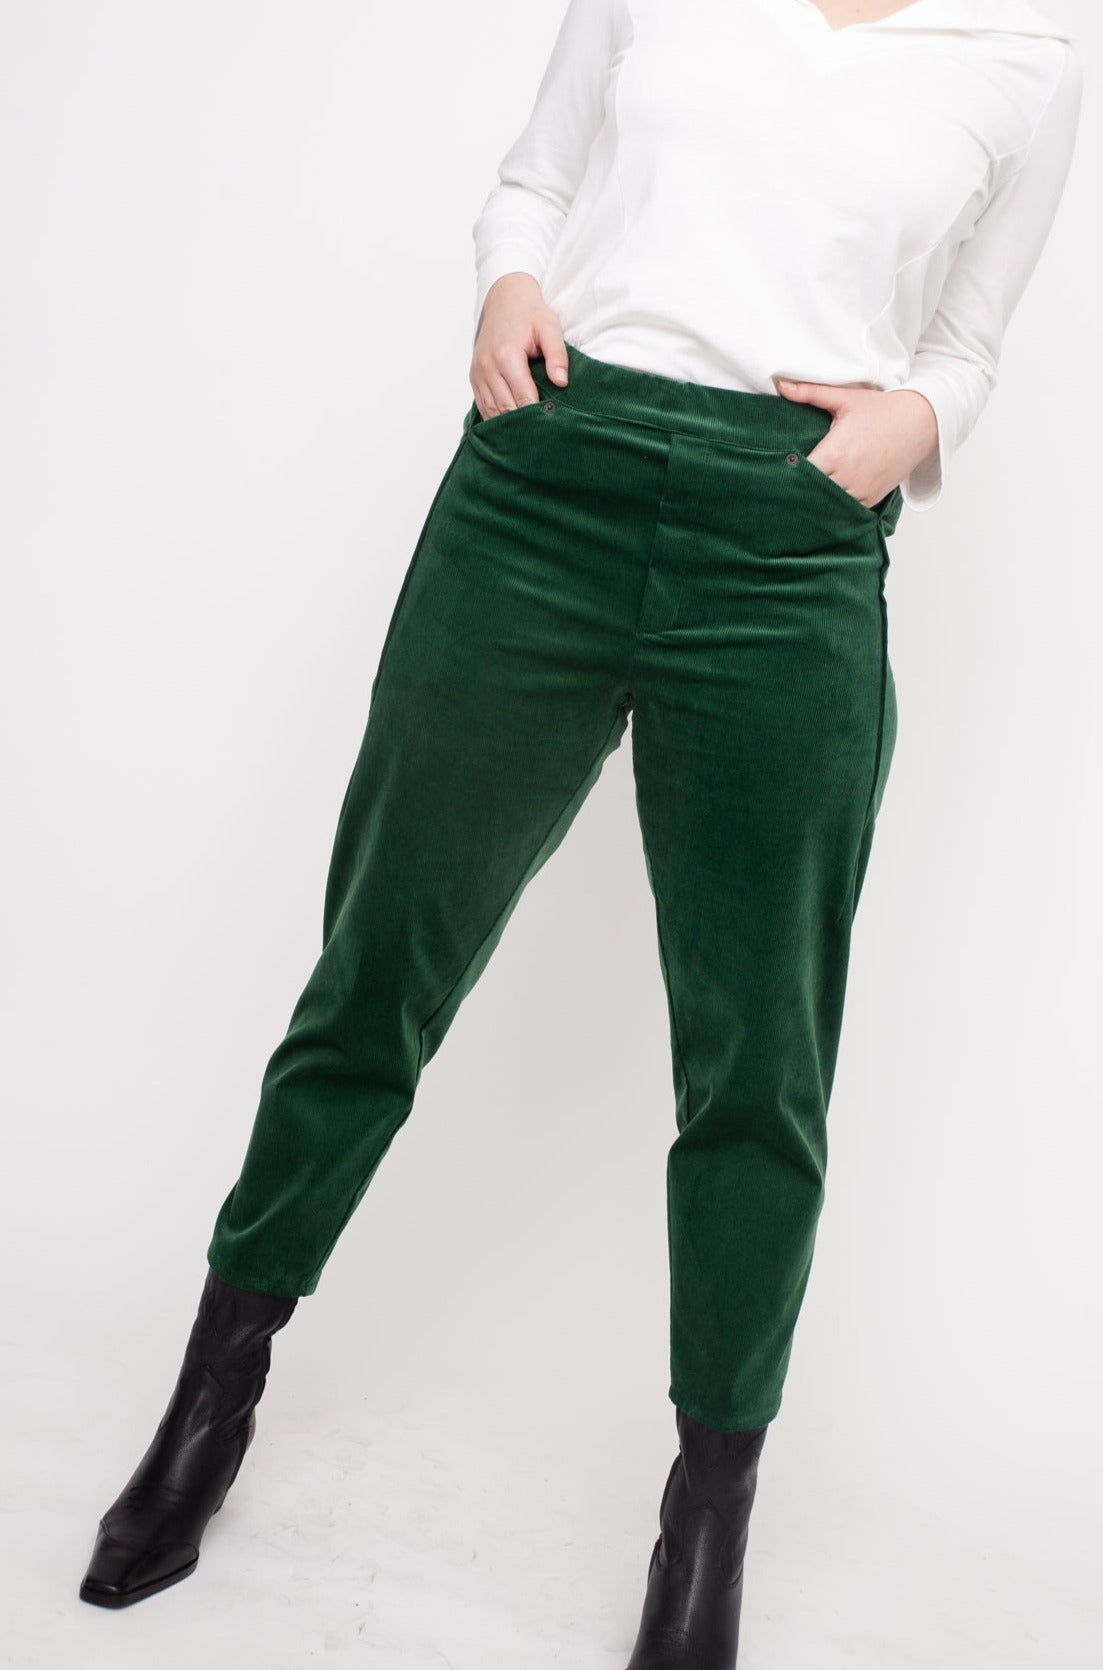 MARTIN Pants W24 (44-50) - Green Corduroy